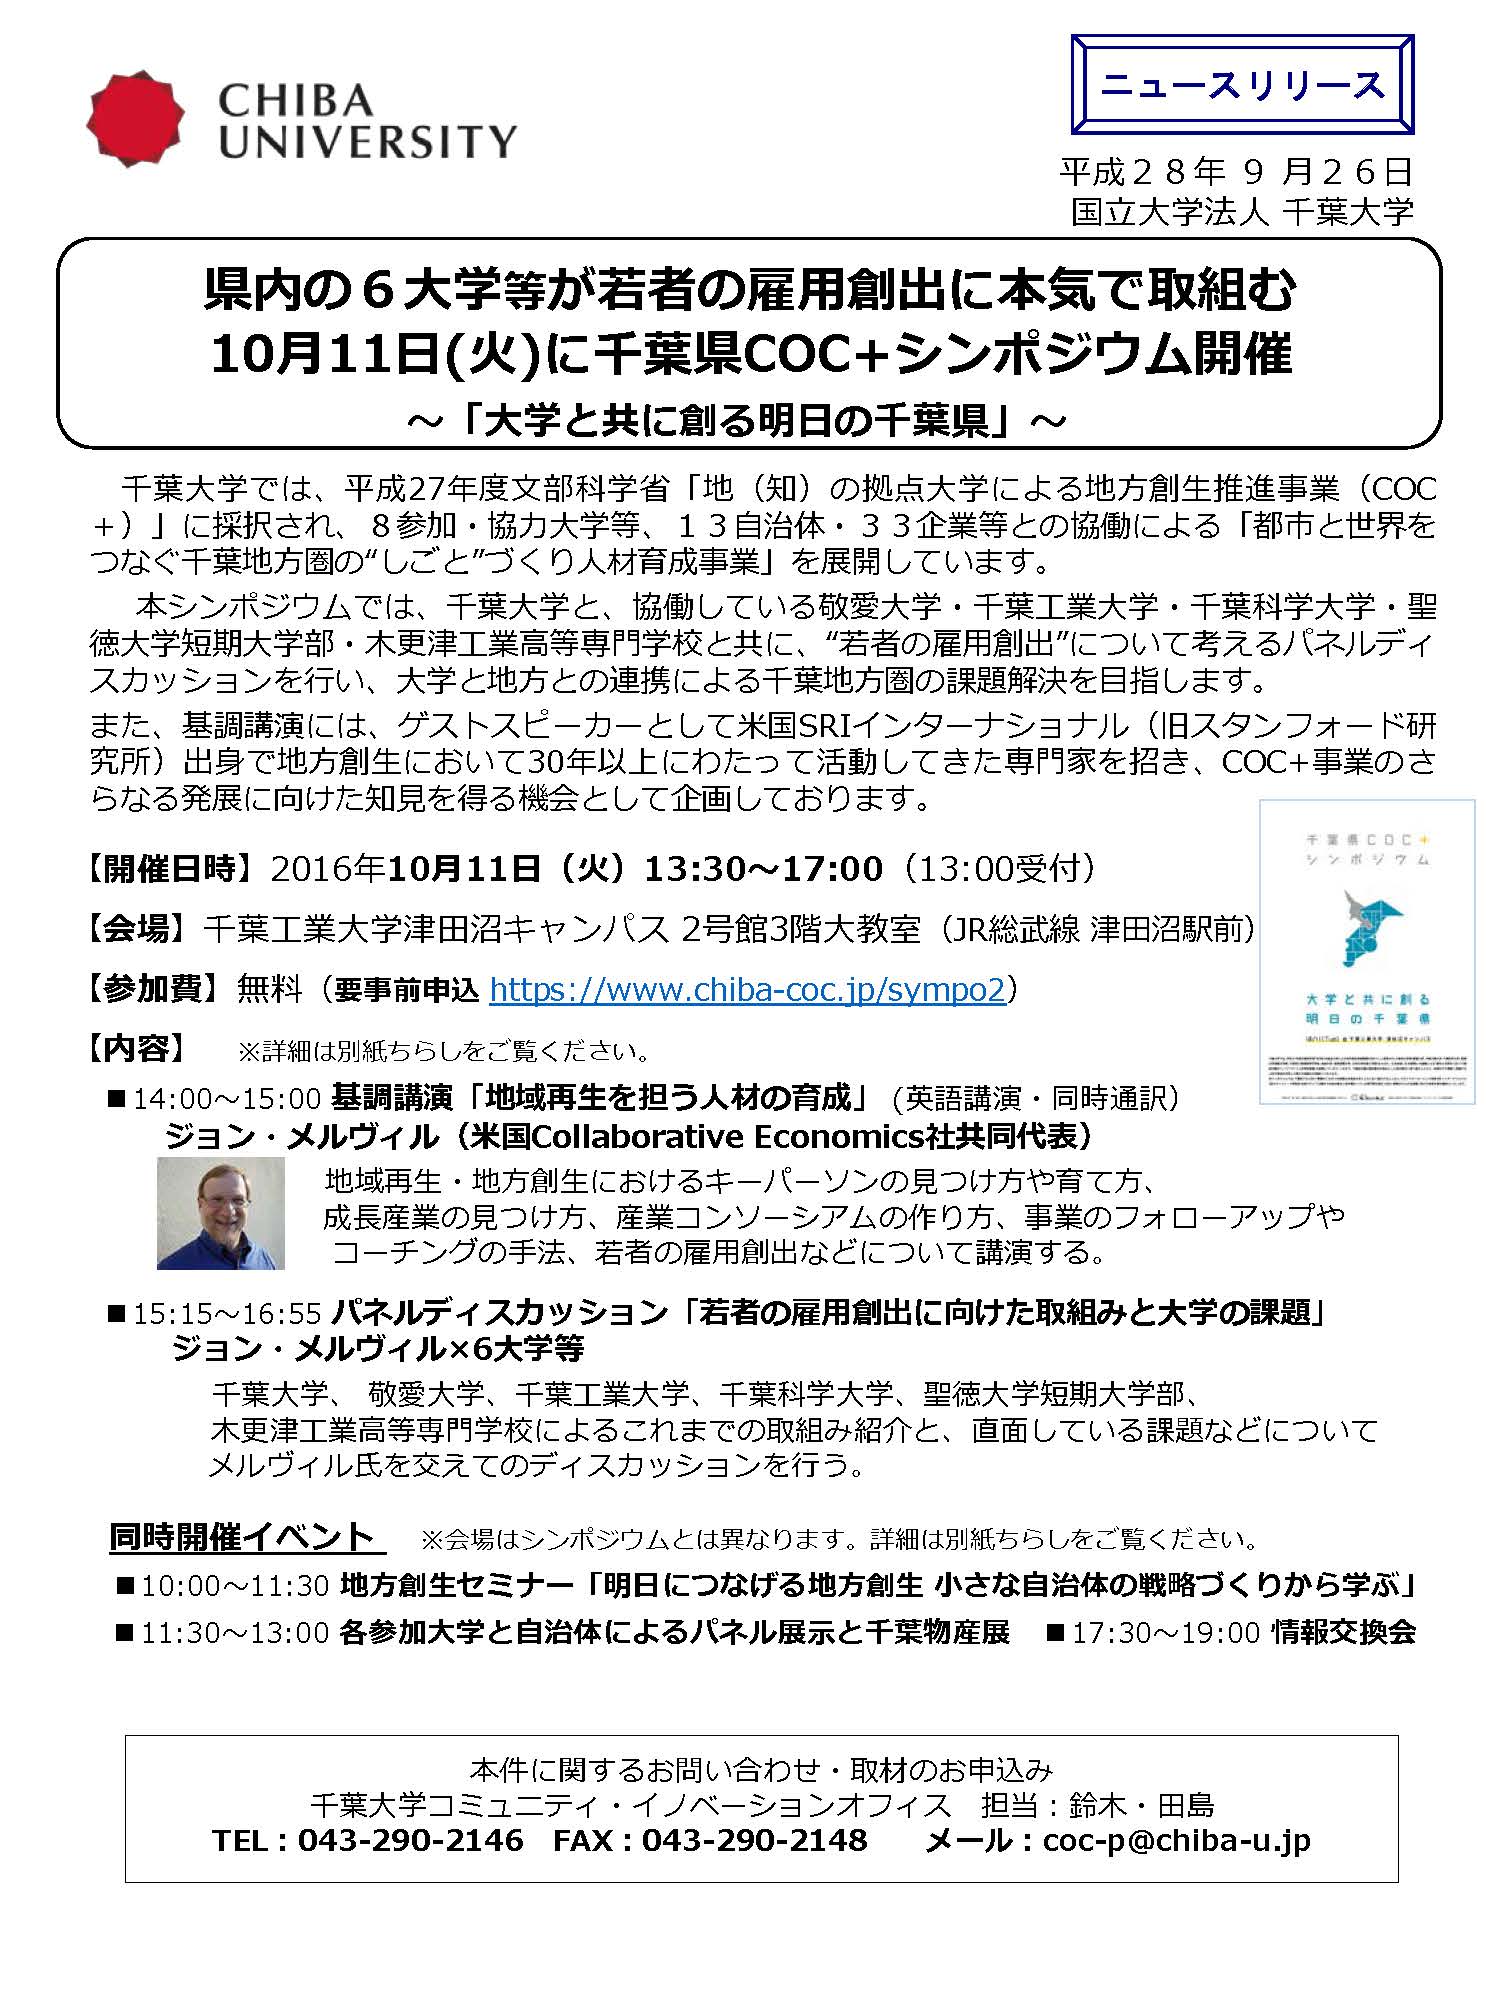 千葉県COC+シンポジウム「大学と共に創る明日の千葉県」